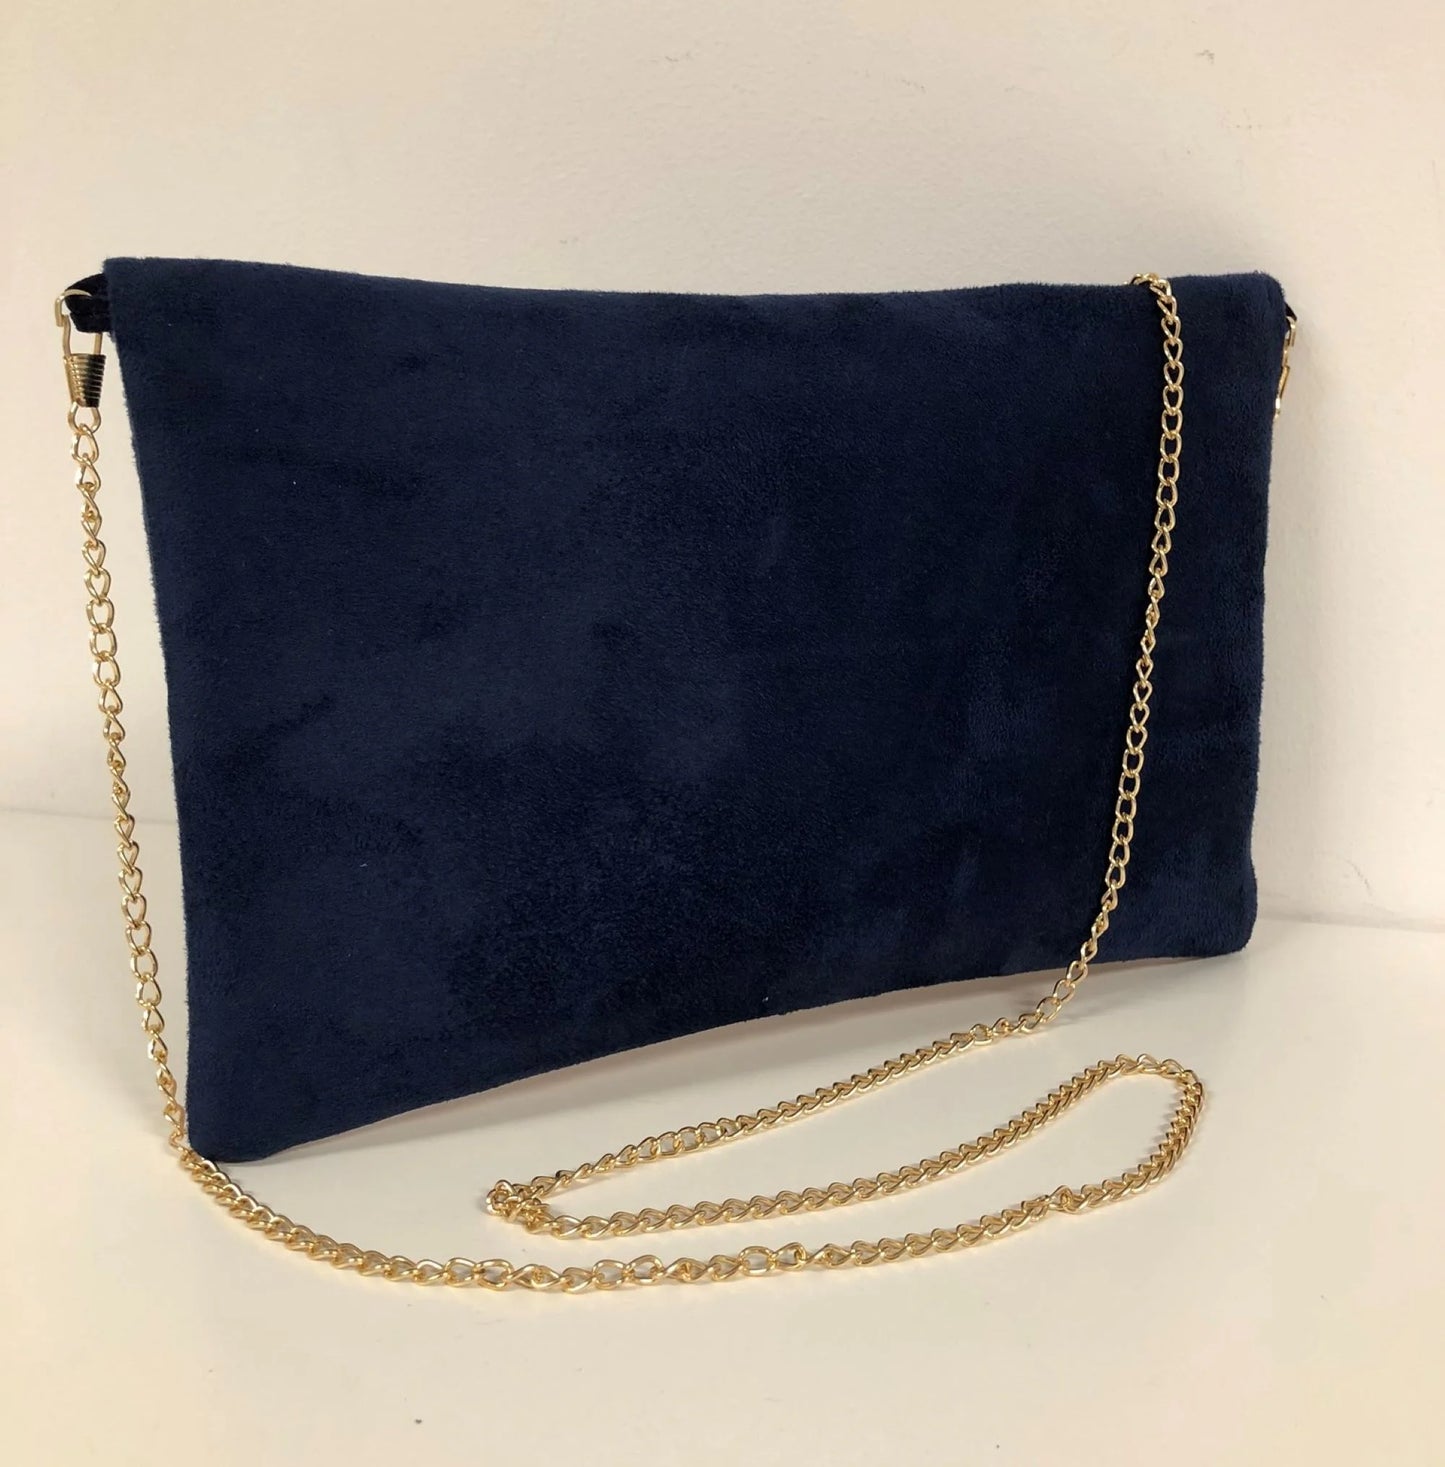 Le sac pochette Isa bleu marine et corail à paillettes dorées, face arrière.